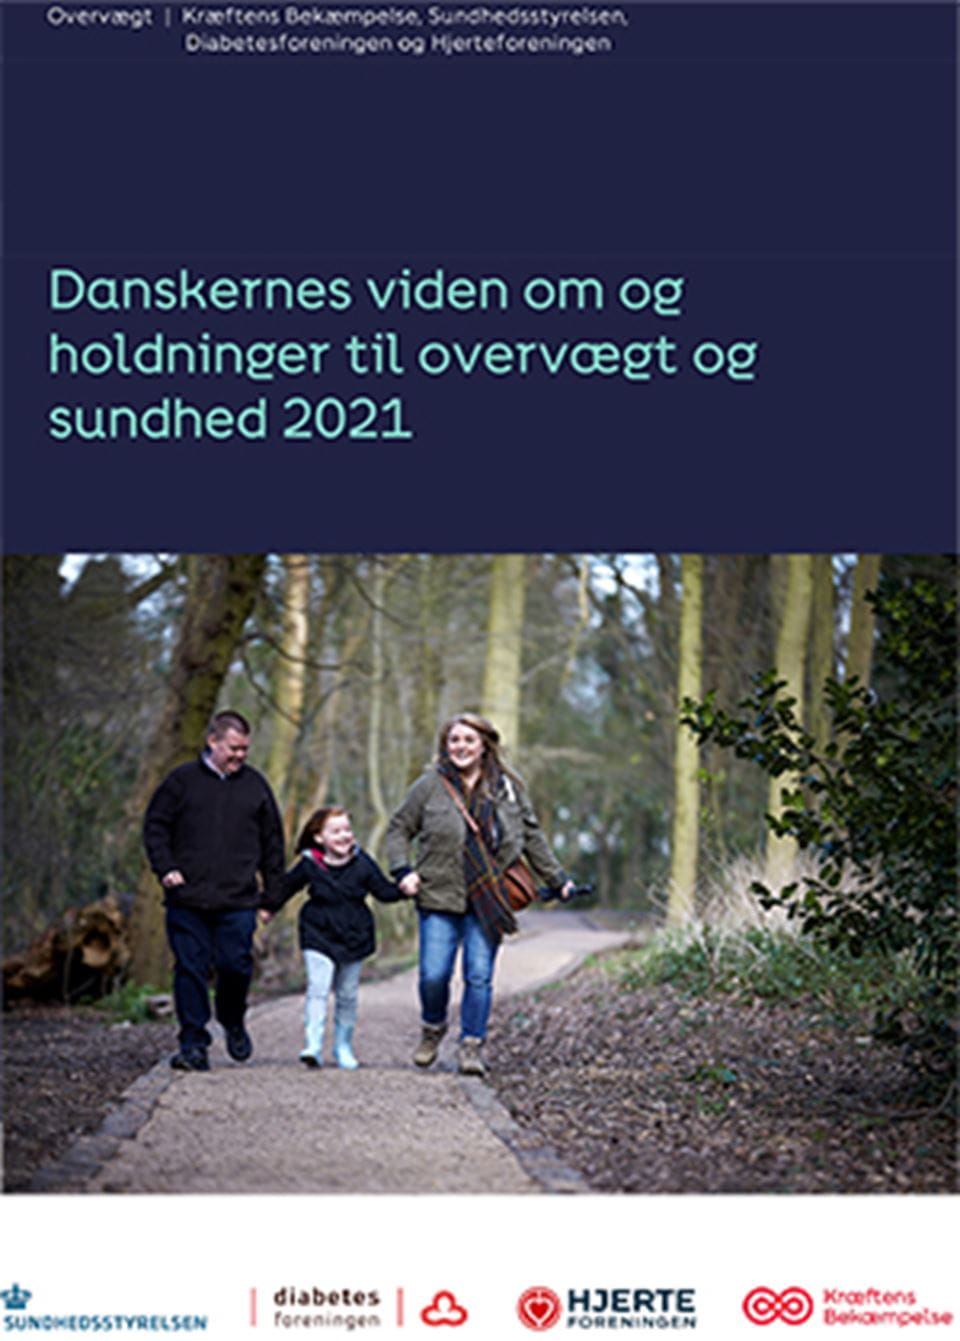 Danskernes viden om og  holdninger til overvægt og sundhed 2021